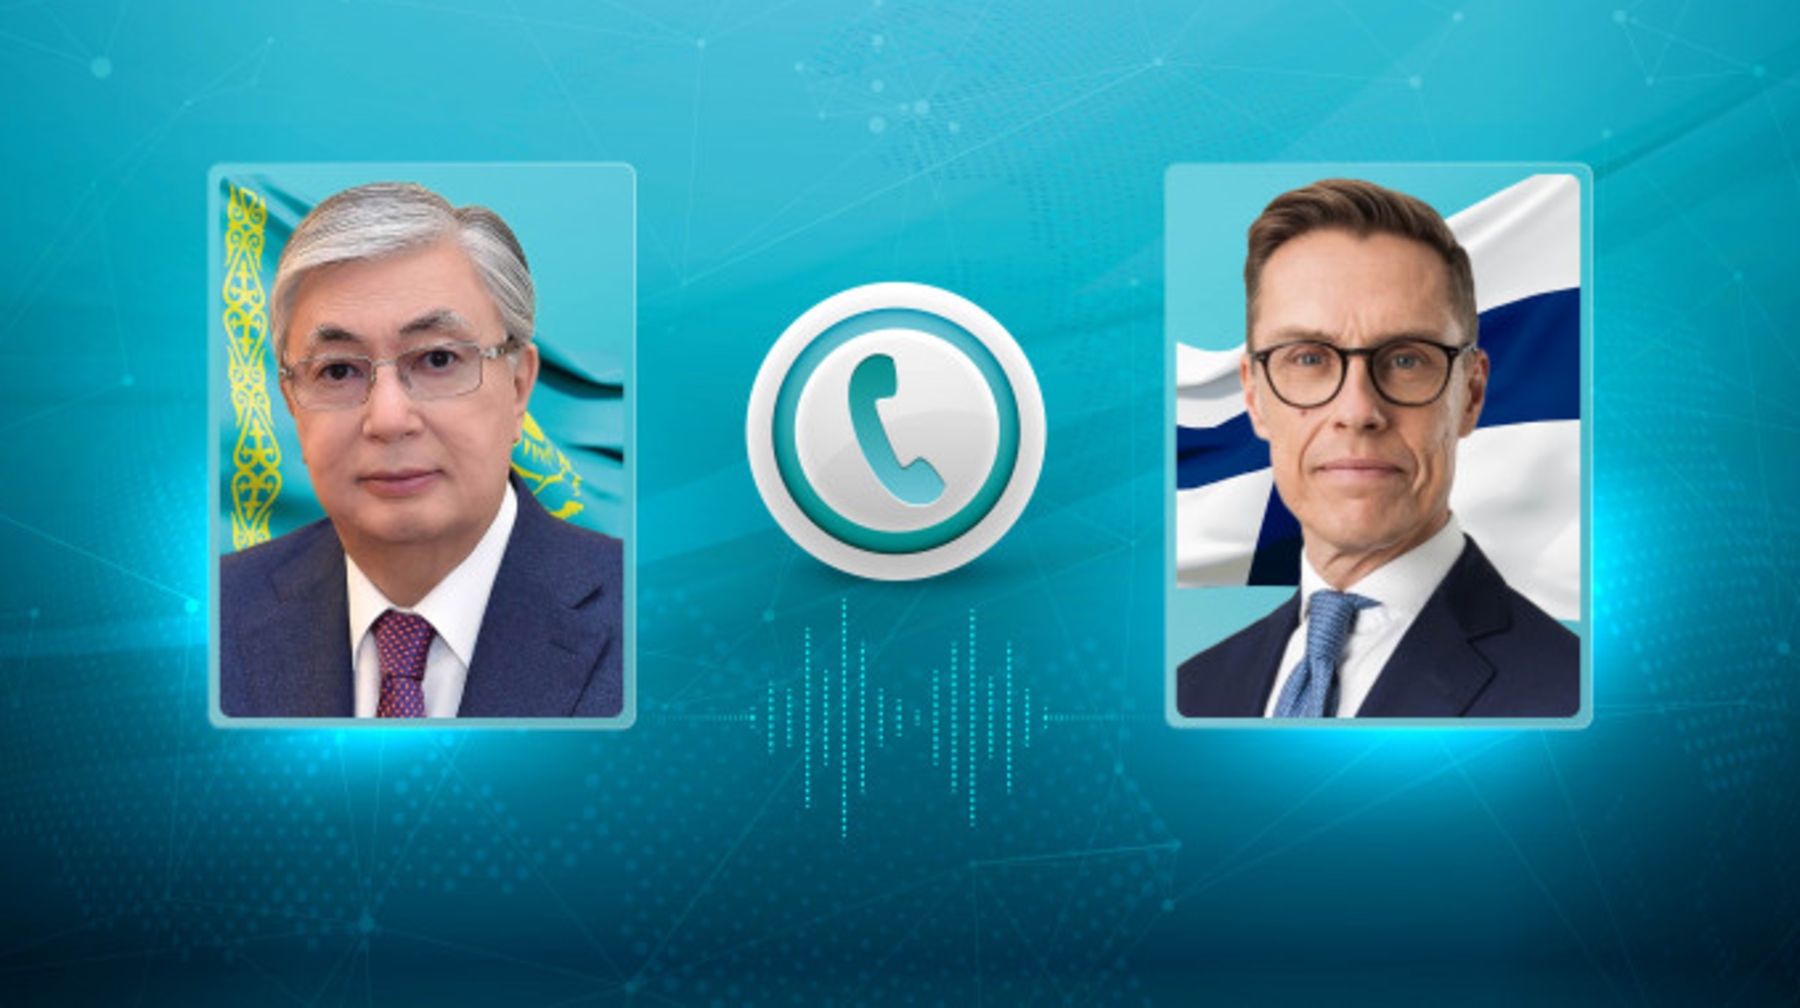 Казахстан готов продолжить конструктивное сотрудничество с Финляндией